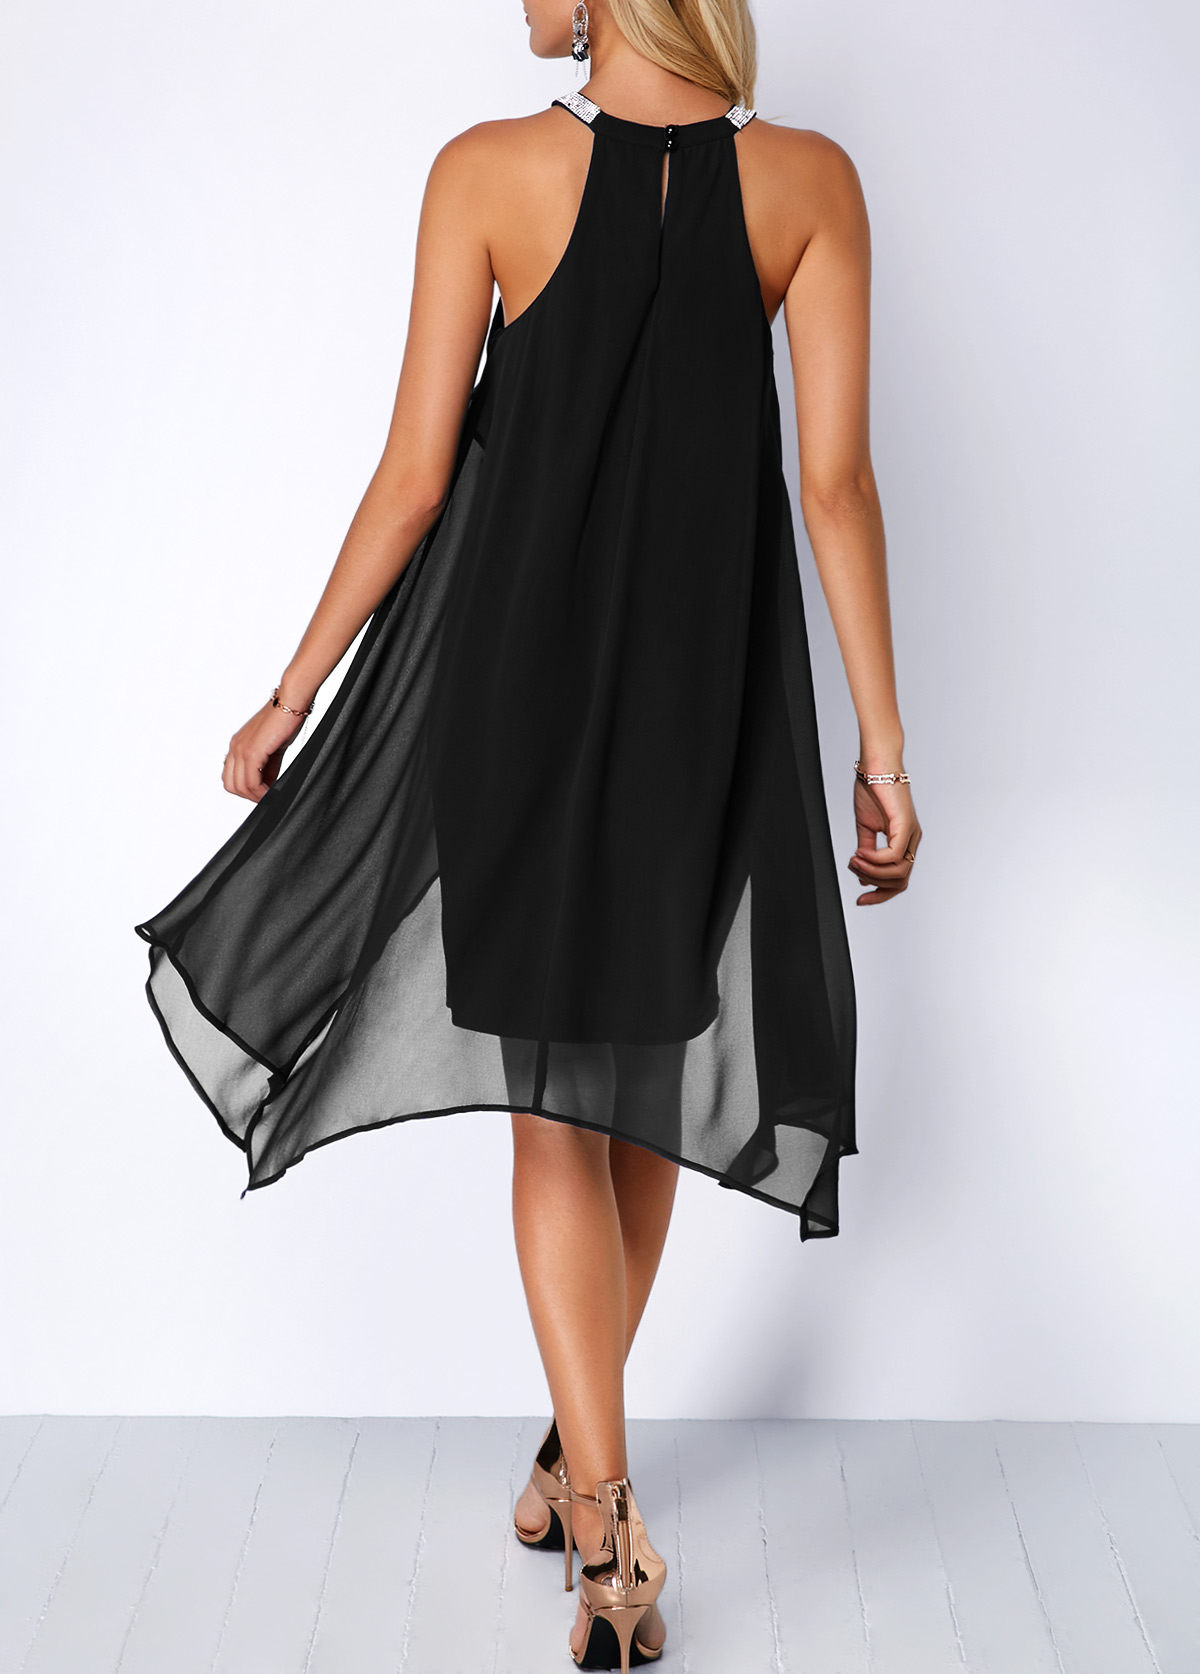 Embellished Neck Chiffon Overlay Black Dress